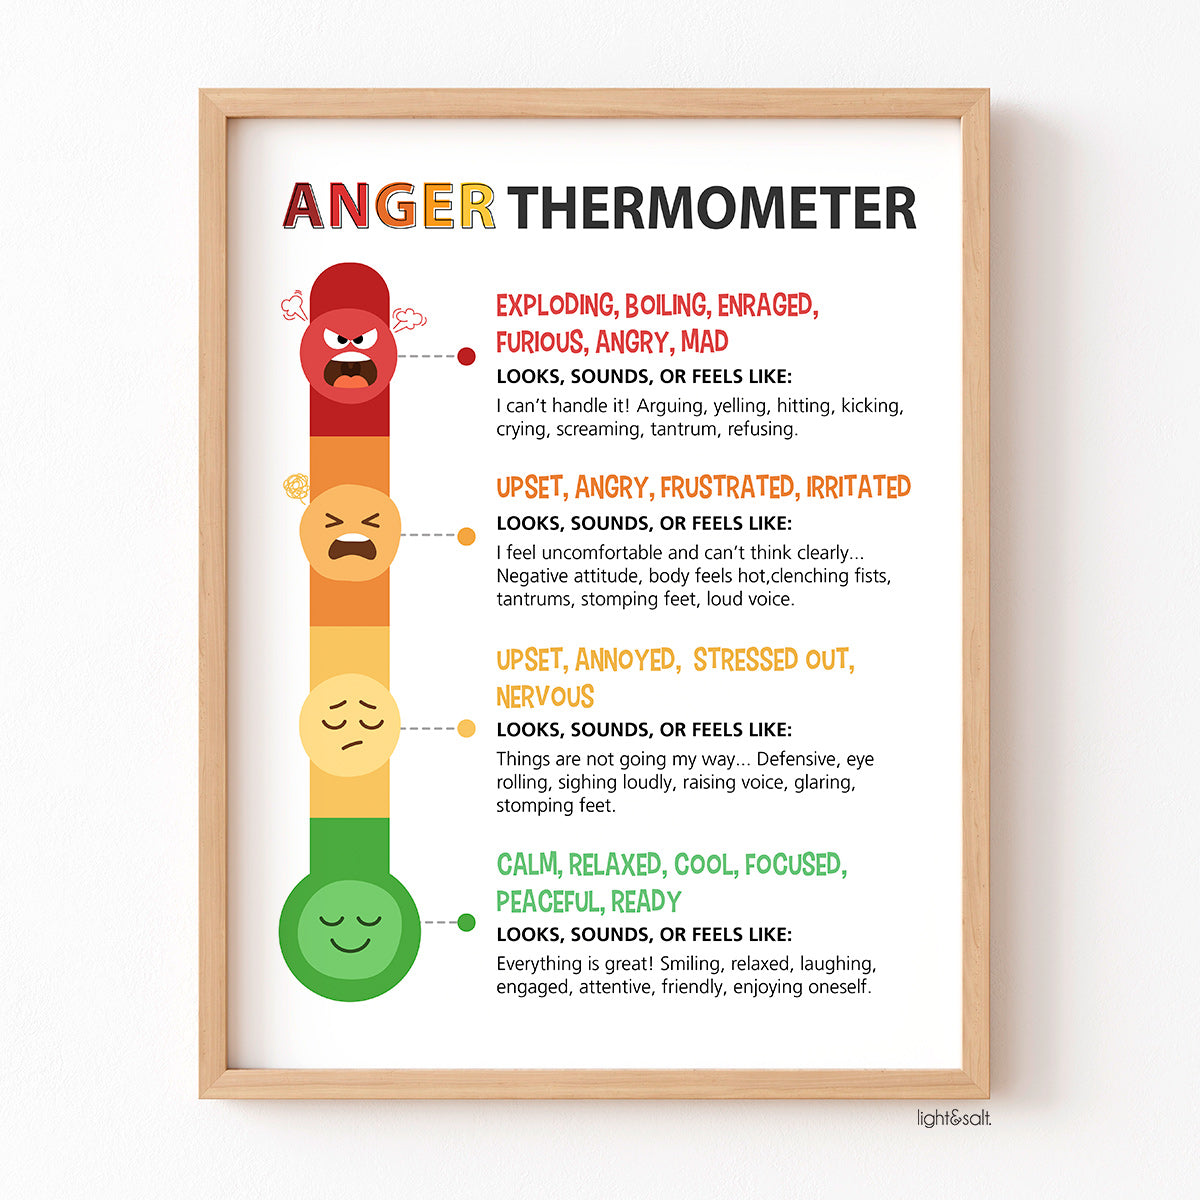 Anger thermometer in Spanish poster, termómetro de enojo